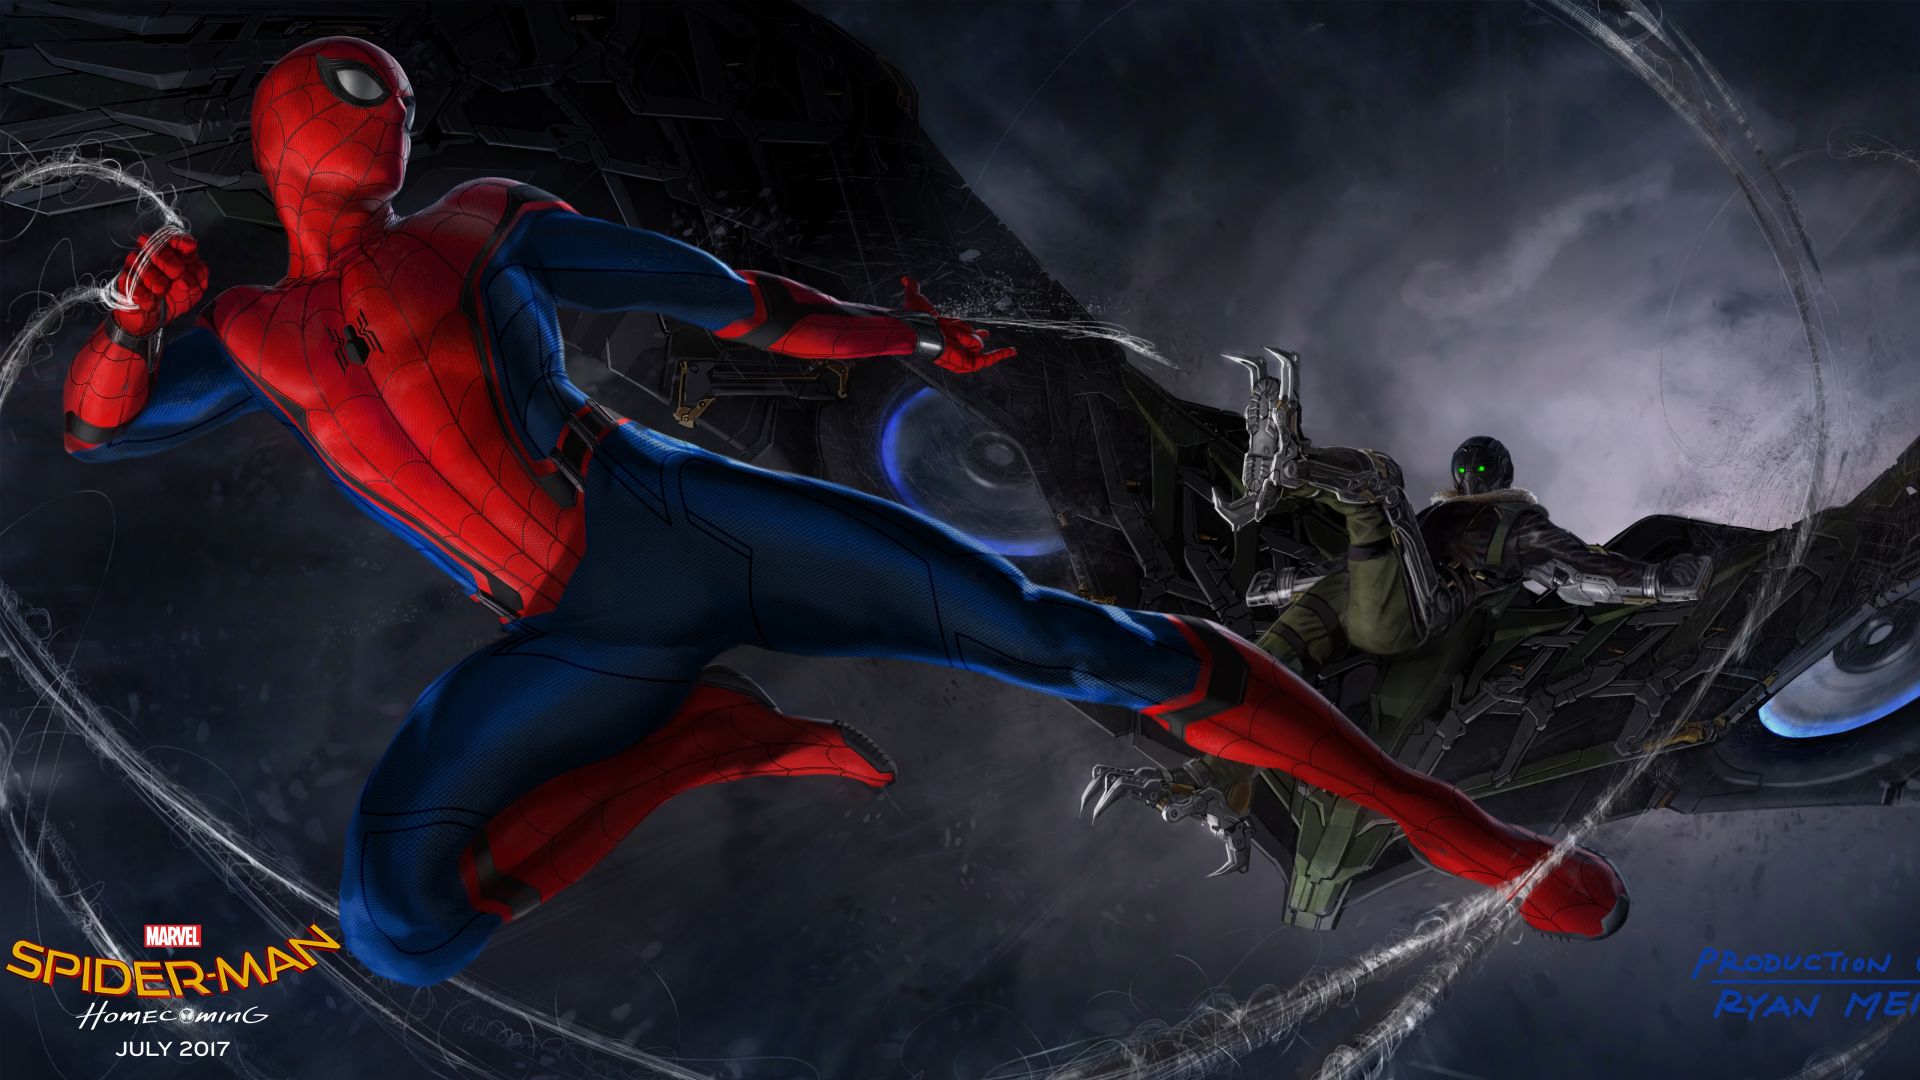 Человек-паук: Возвращение домой, человек паук, супергерой, лучшие фильмы, Spider-man homecoming, spider-man, superhero, best movies (horizontal)